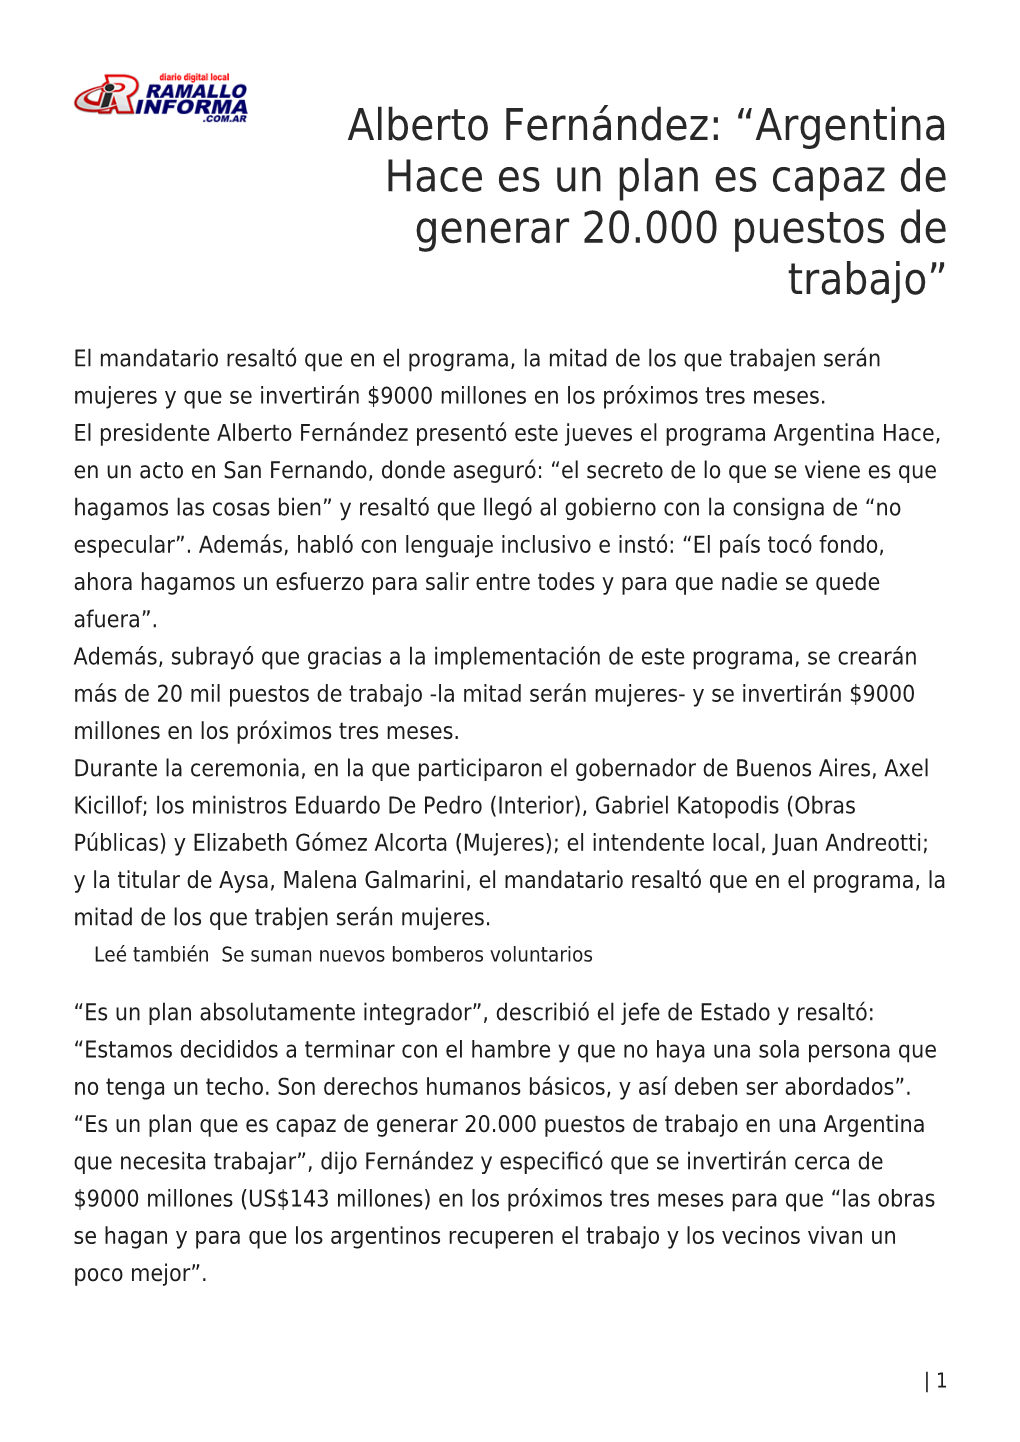 Alberto Fernández: “Argentina Hace Es Un Plan Es Capaz De Generar 20.000 Puestos De Trabajo”